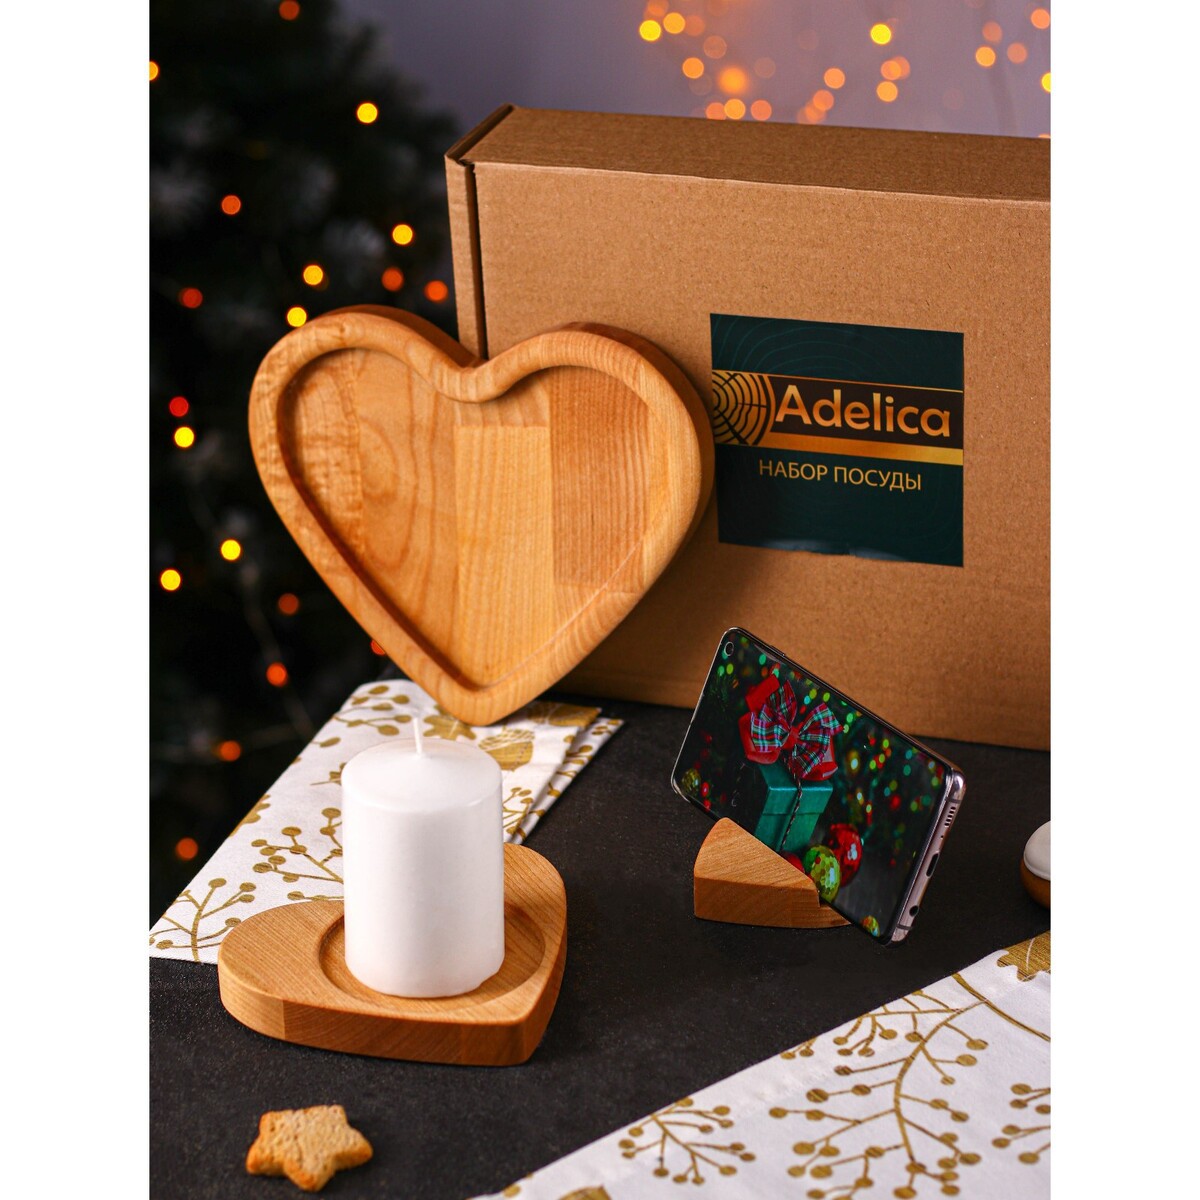 Подарочный набор деревянной посуды adelica набор деревянной посуды adelica